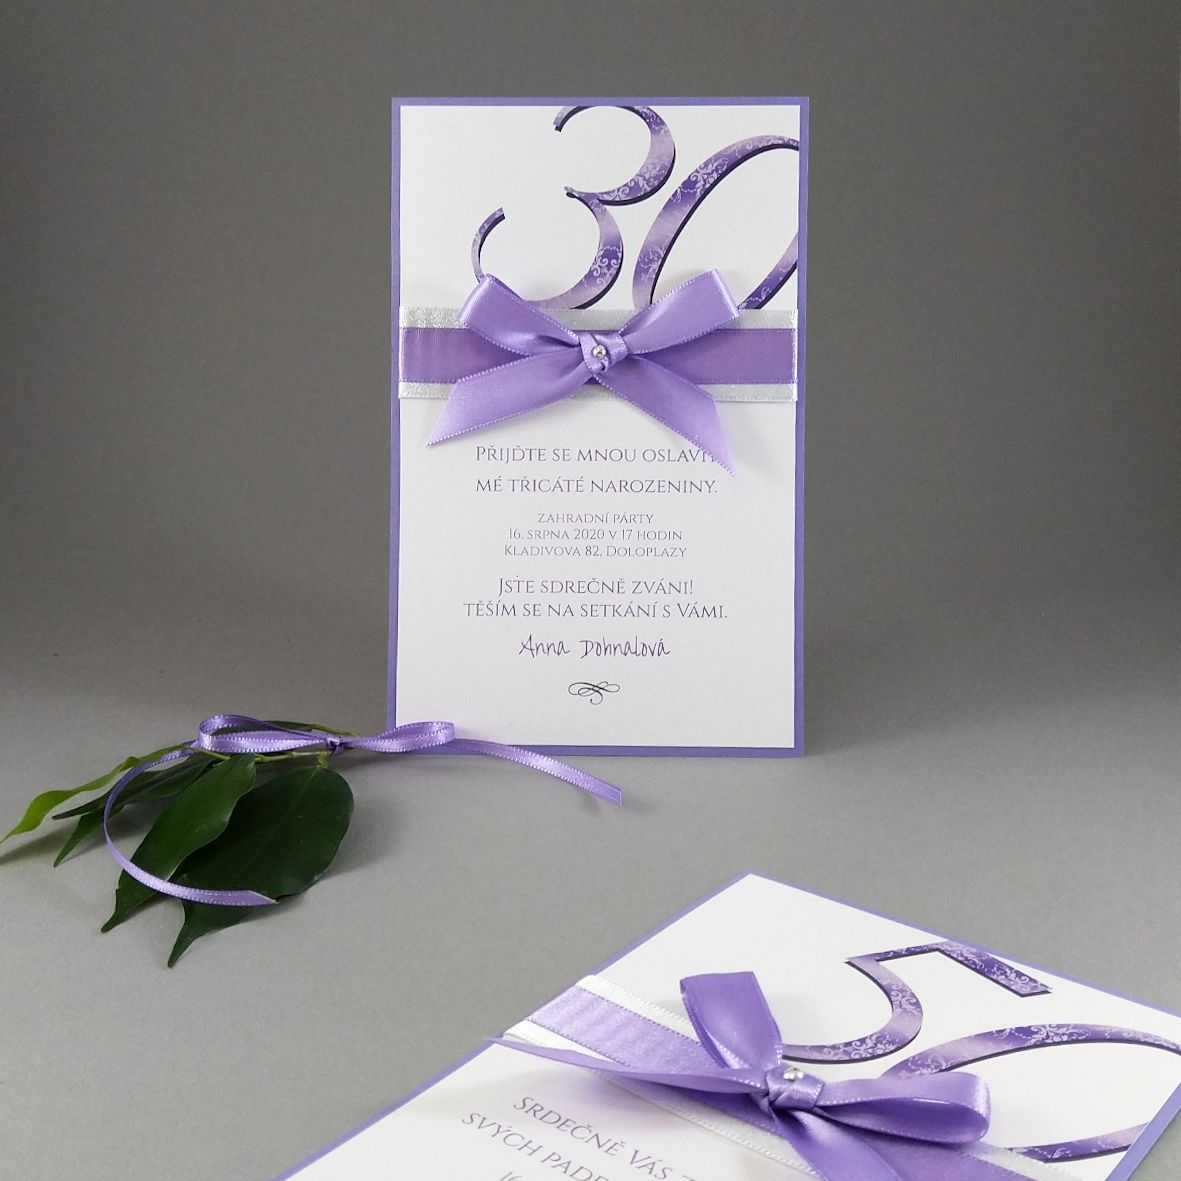 Pozvánka na oslavu – kašírovaná karta s atlasovou stuhou, barva perleťová fialová + bílá.